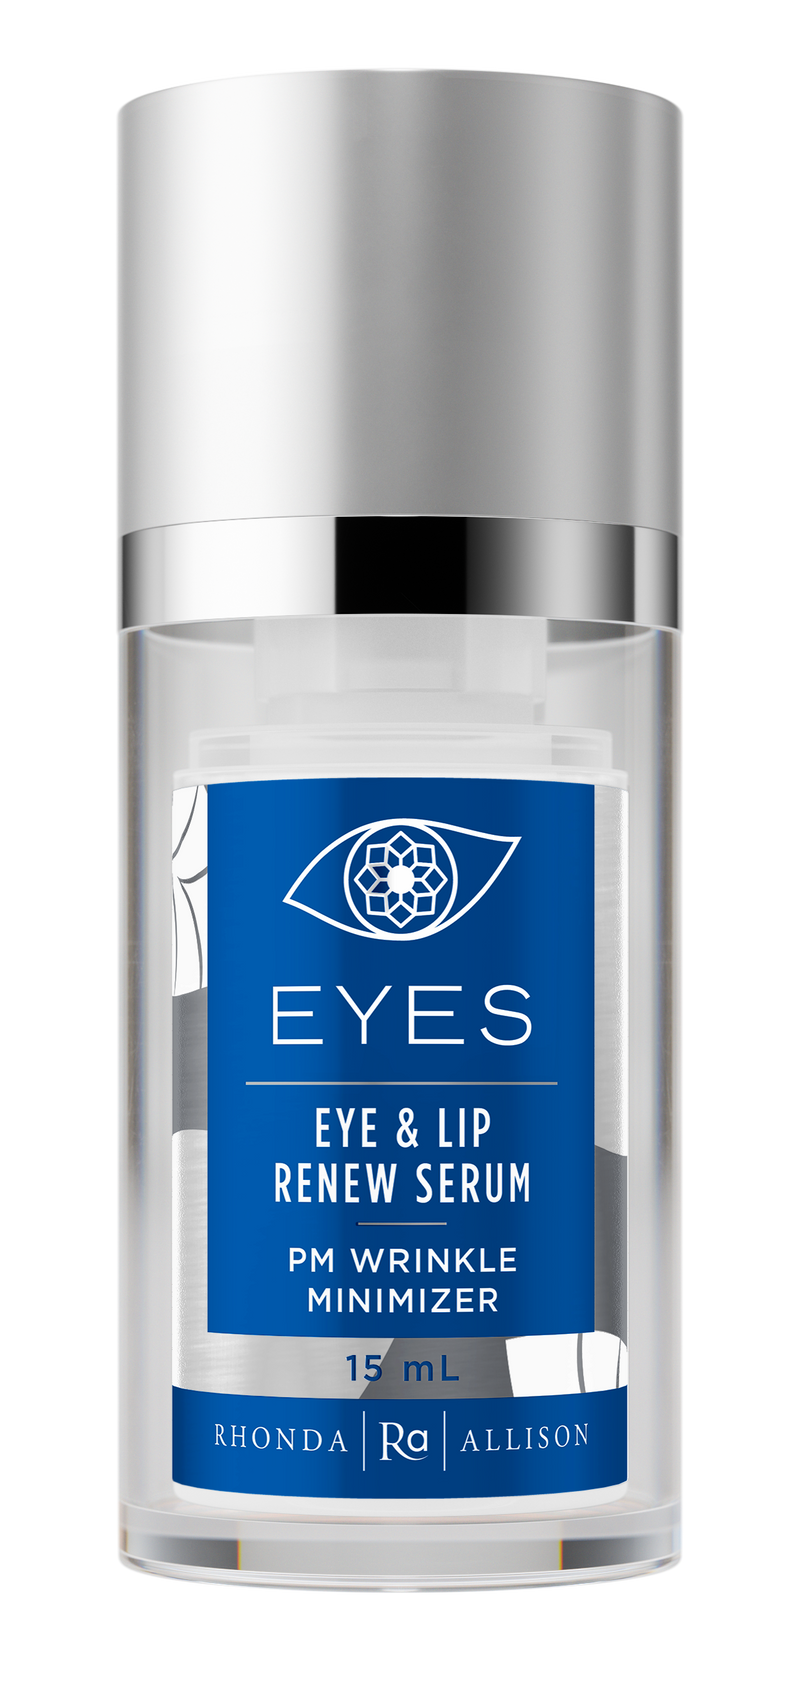 Eye & Lip Renew Serum